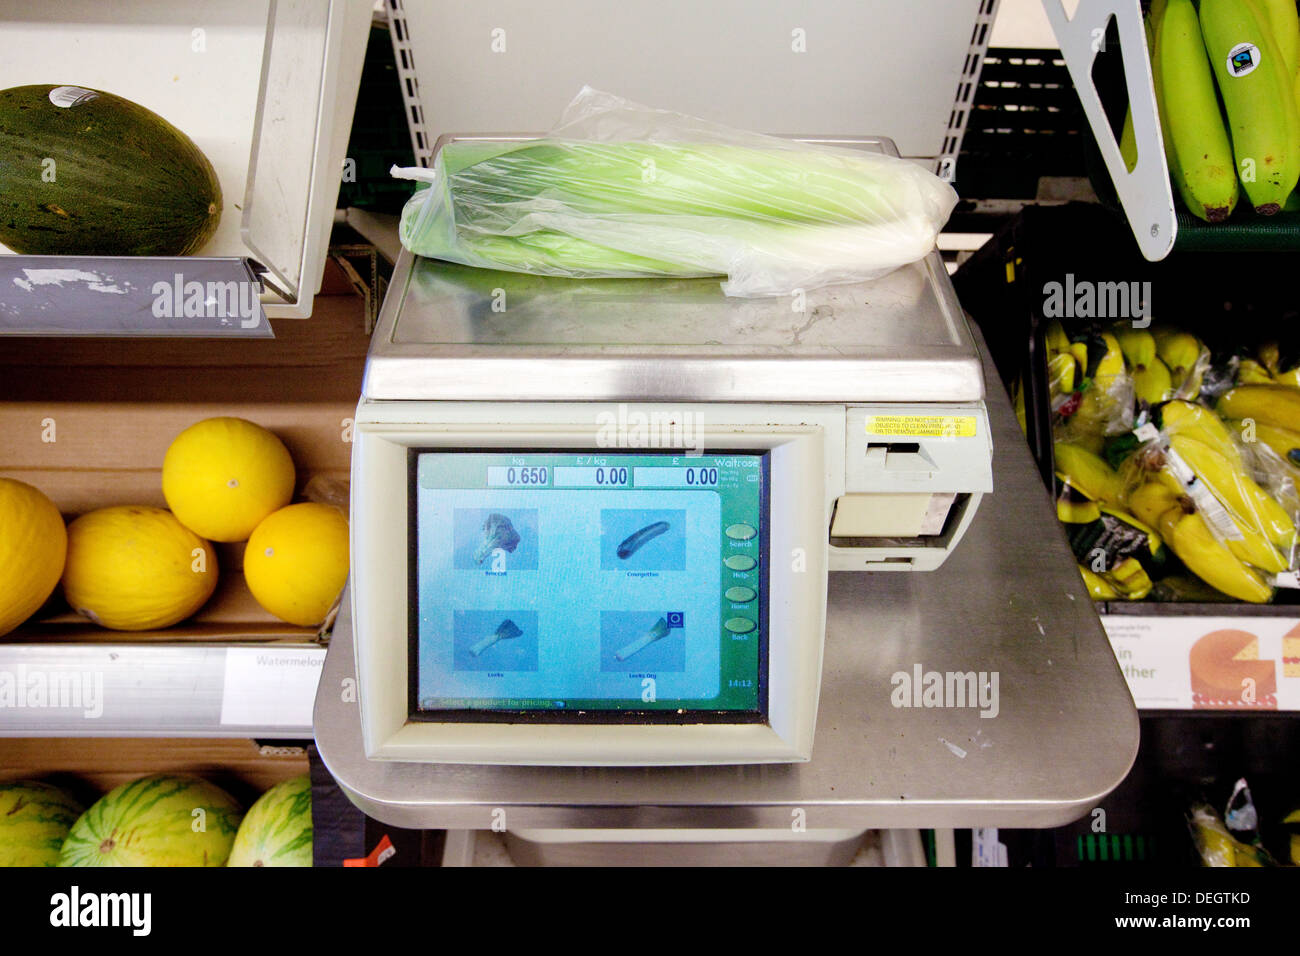 L'achat de fruits et légumes dans un supermarché Waitrose, avec des balances, Newmarket Suffolk UK Banque D'Images